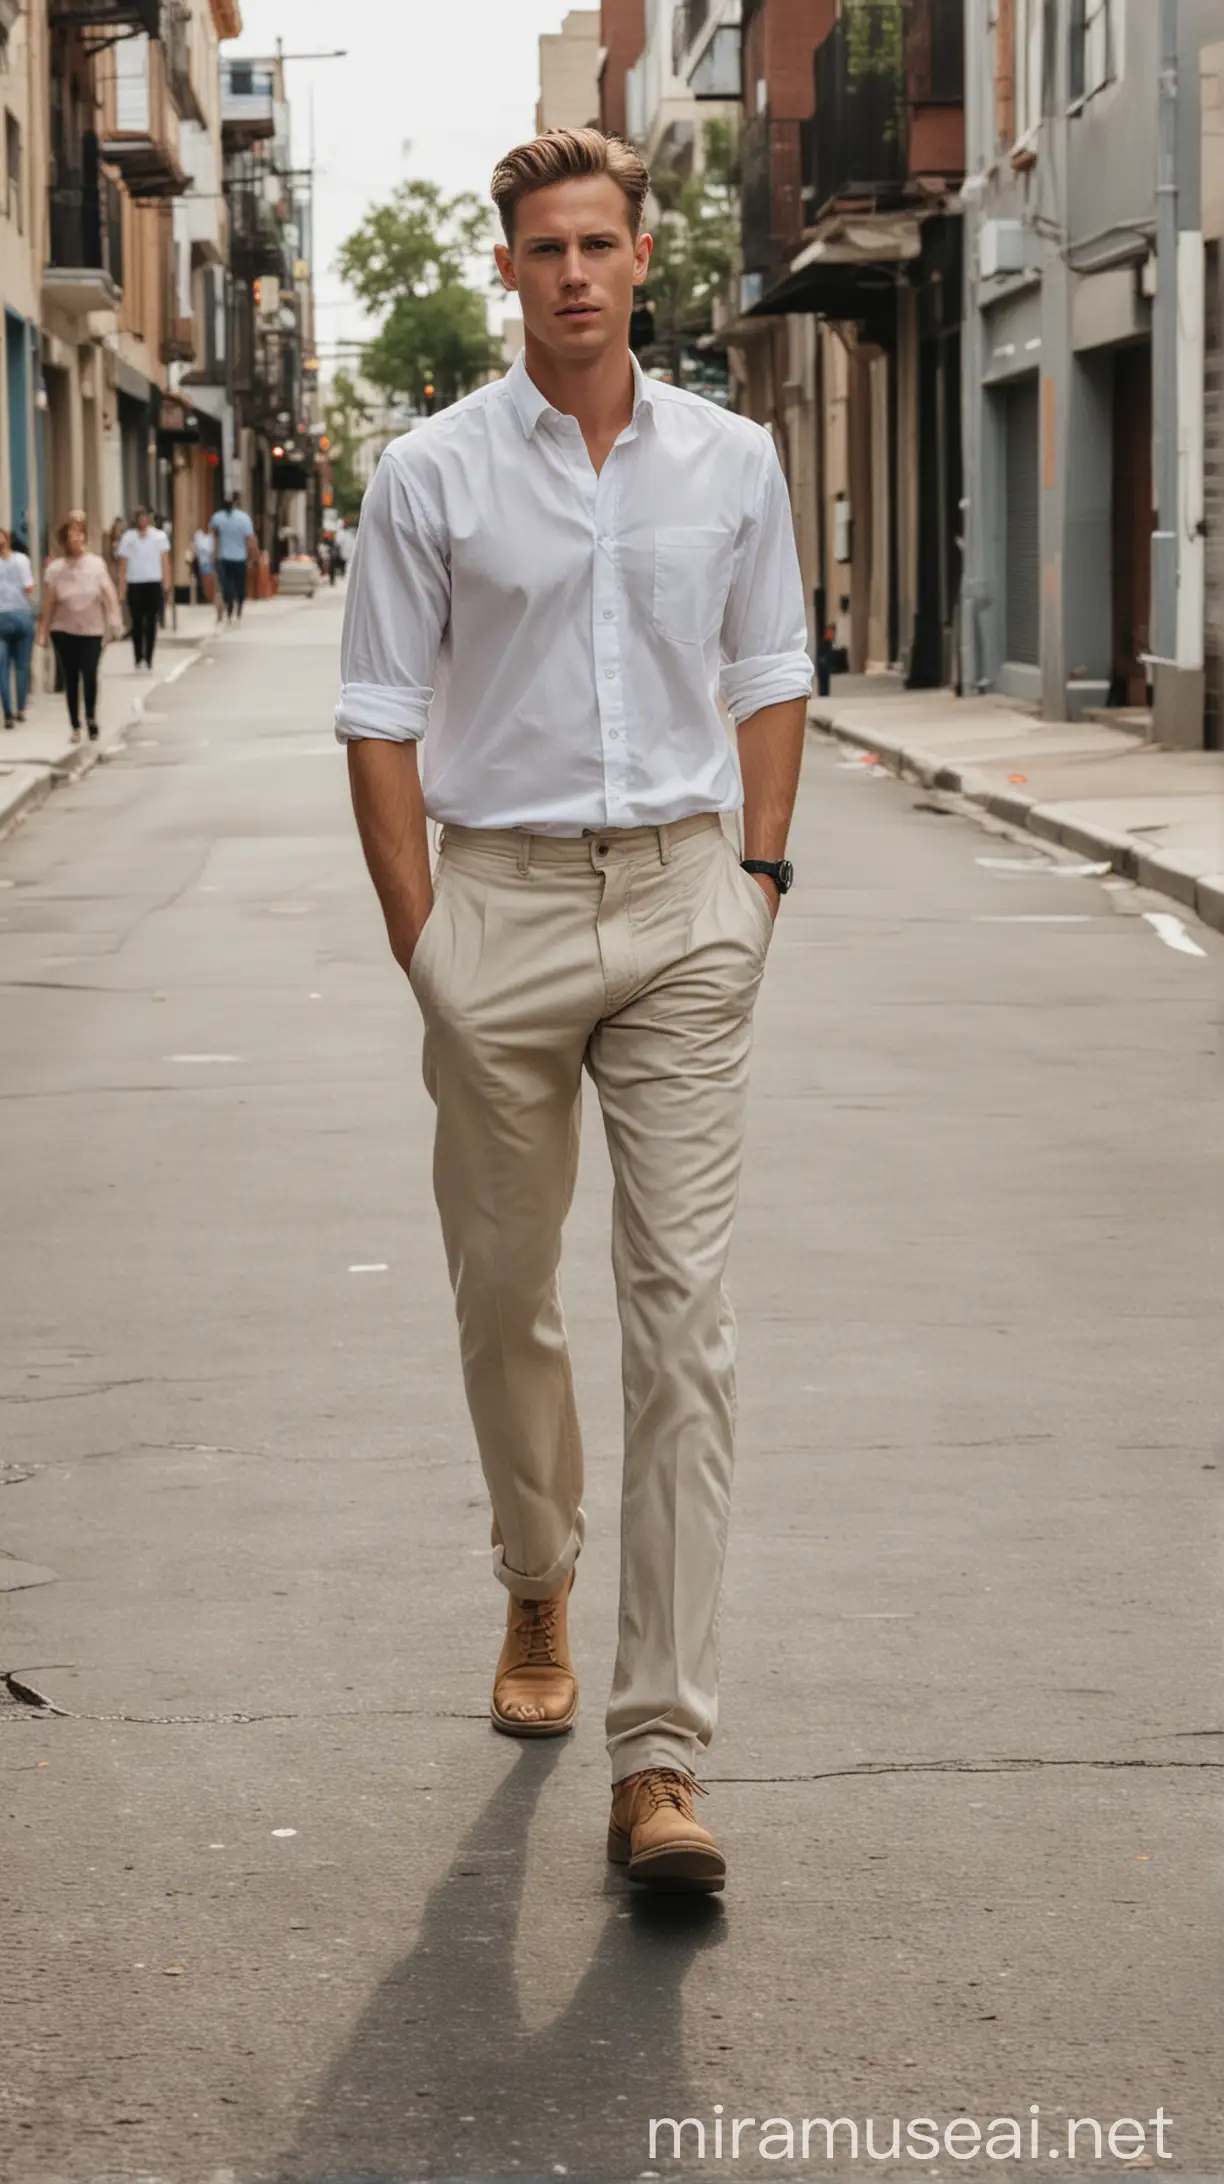 An American men wearing white shirt. walking in a empty street